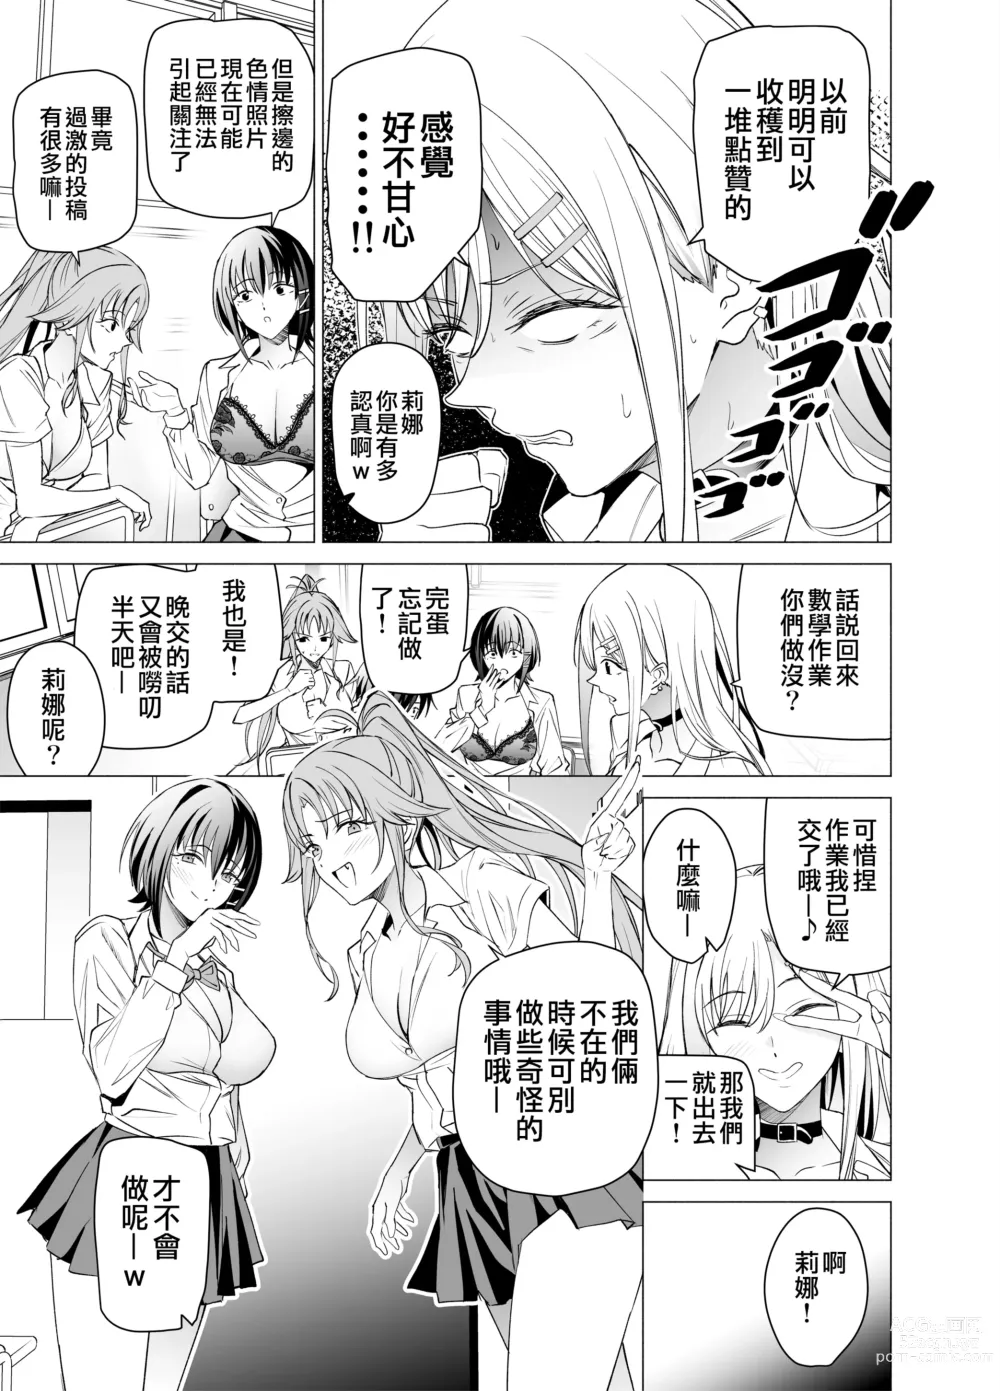 Page 9 of doujinshi 色情SNS的點贊量為目的而向你靠過來的辣妹的故事